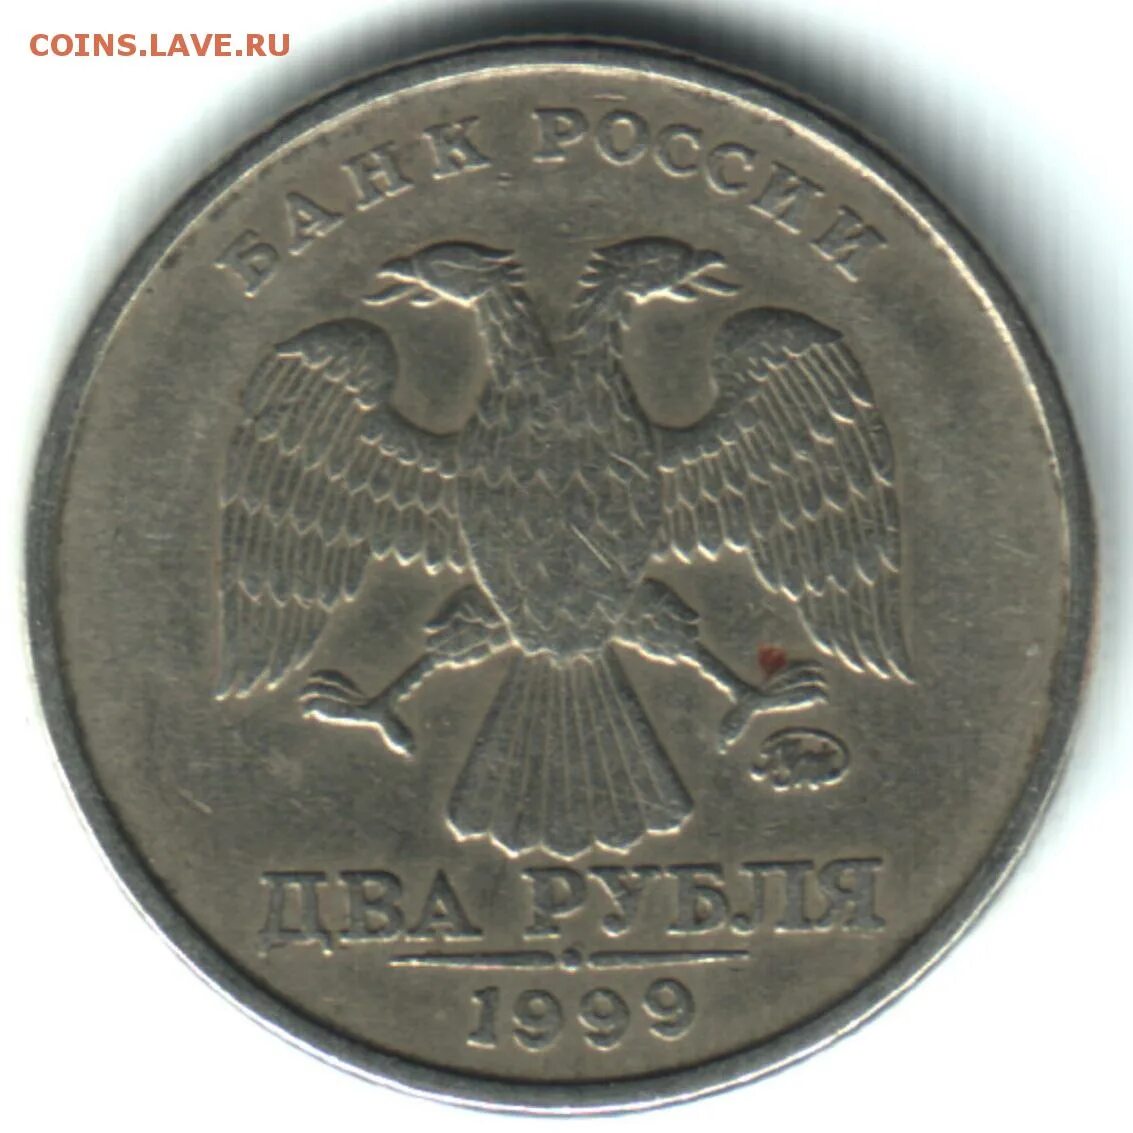 СПДМ монеты. 10 Рублей 1999. Монета 5 рублей 1999 года СПМД. Как выглядит СПДМ на монетах. Рубль 23 12